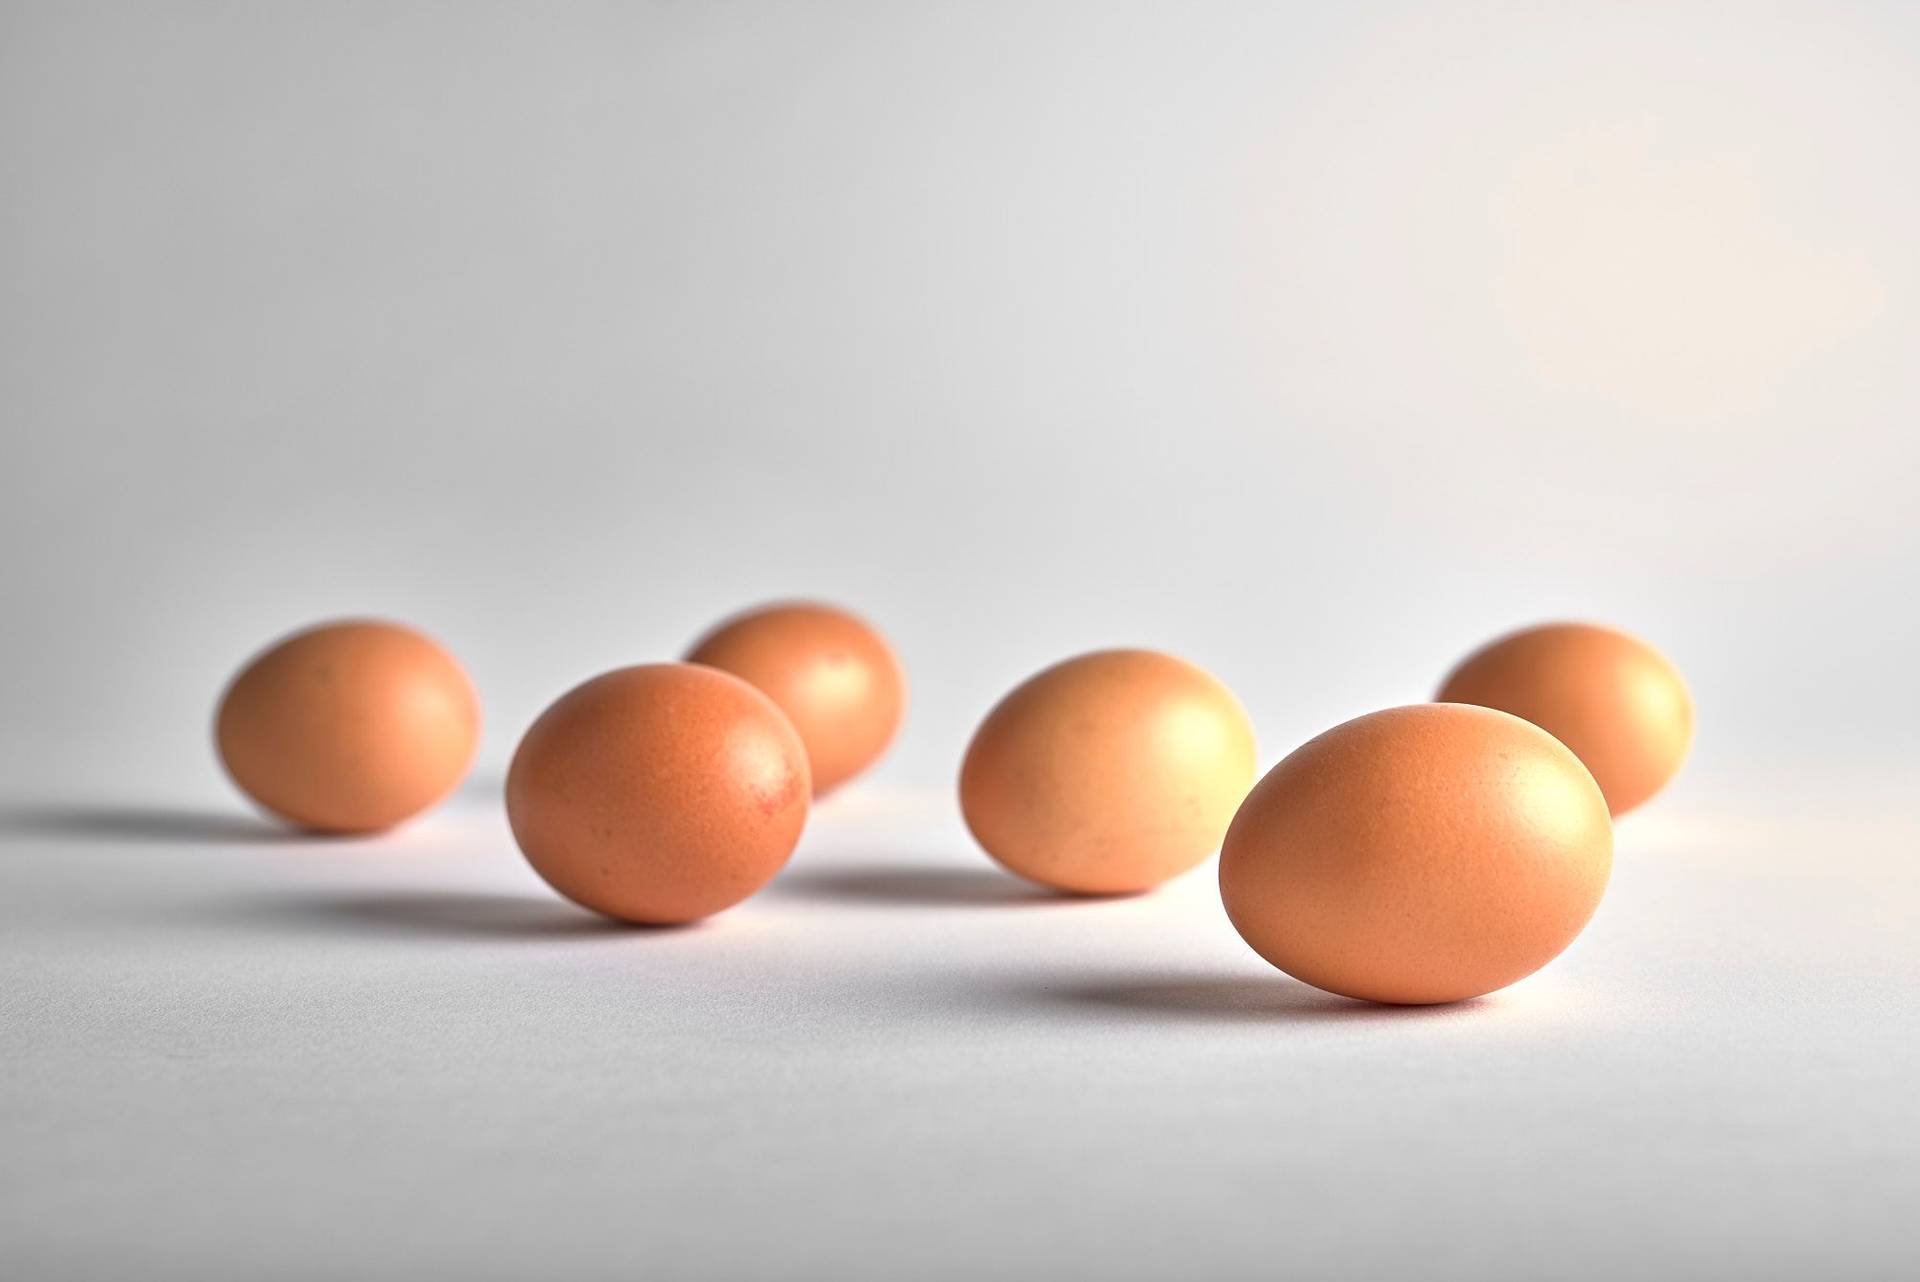 sechs eier auf weissem hintergrund